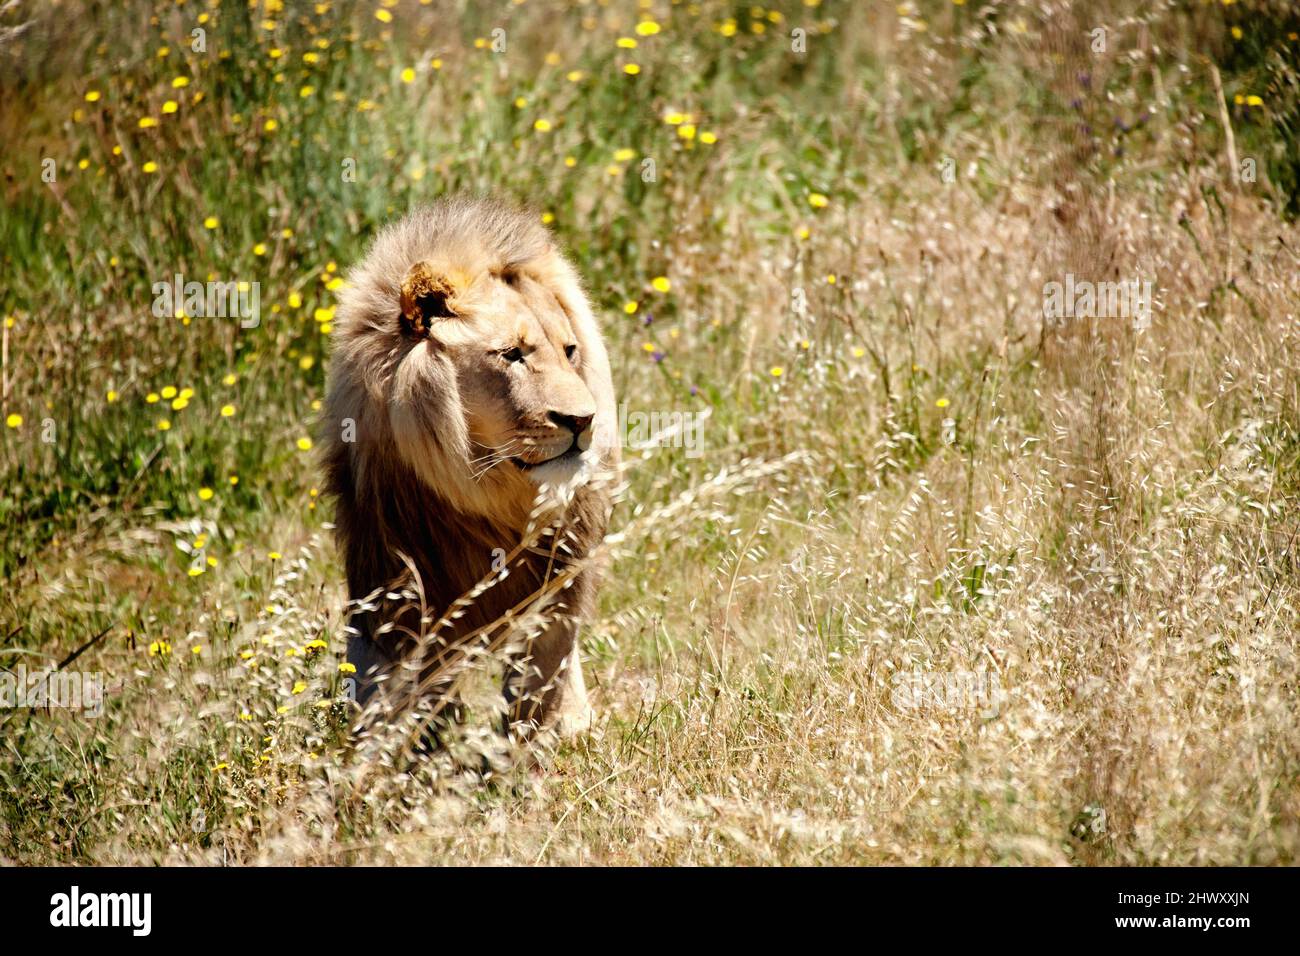 Je connais des shes ici quelque part. Photo d'un majestueux lion en prowling dans les prairies. Banque D'Images